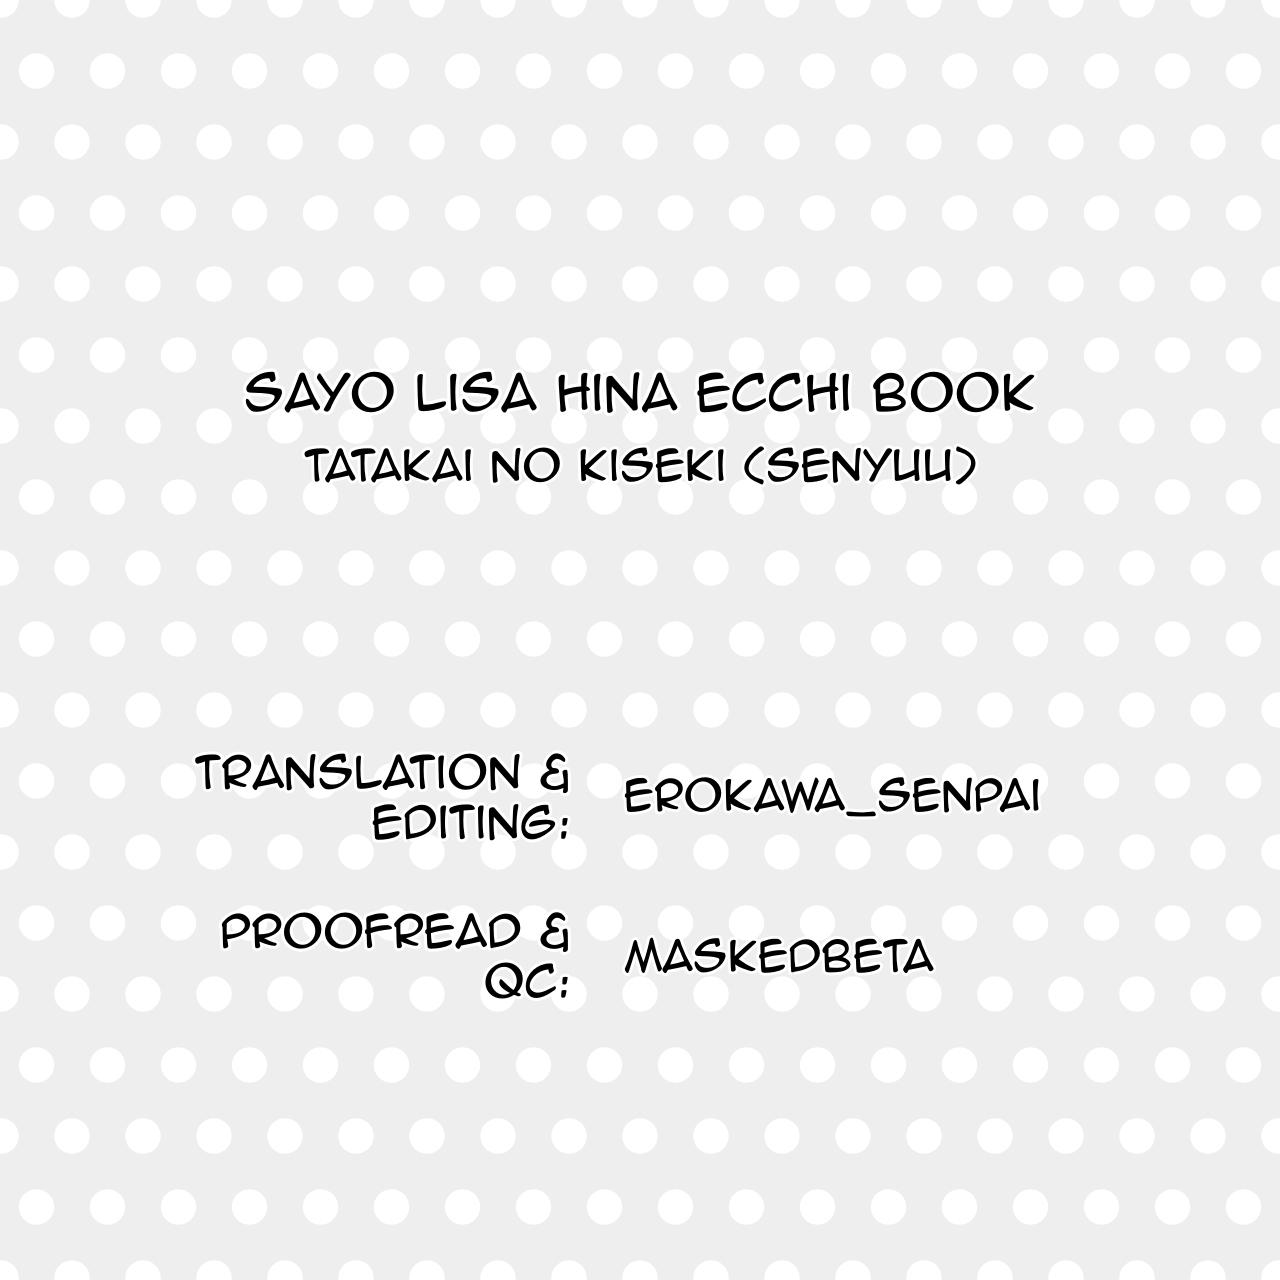 Sayo Lisa Hina Ecchi Bon | Sayo Lisa Hina Ecchi Book 17